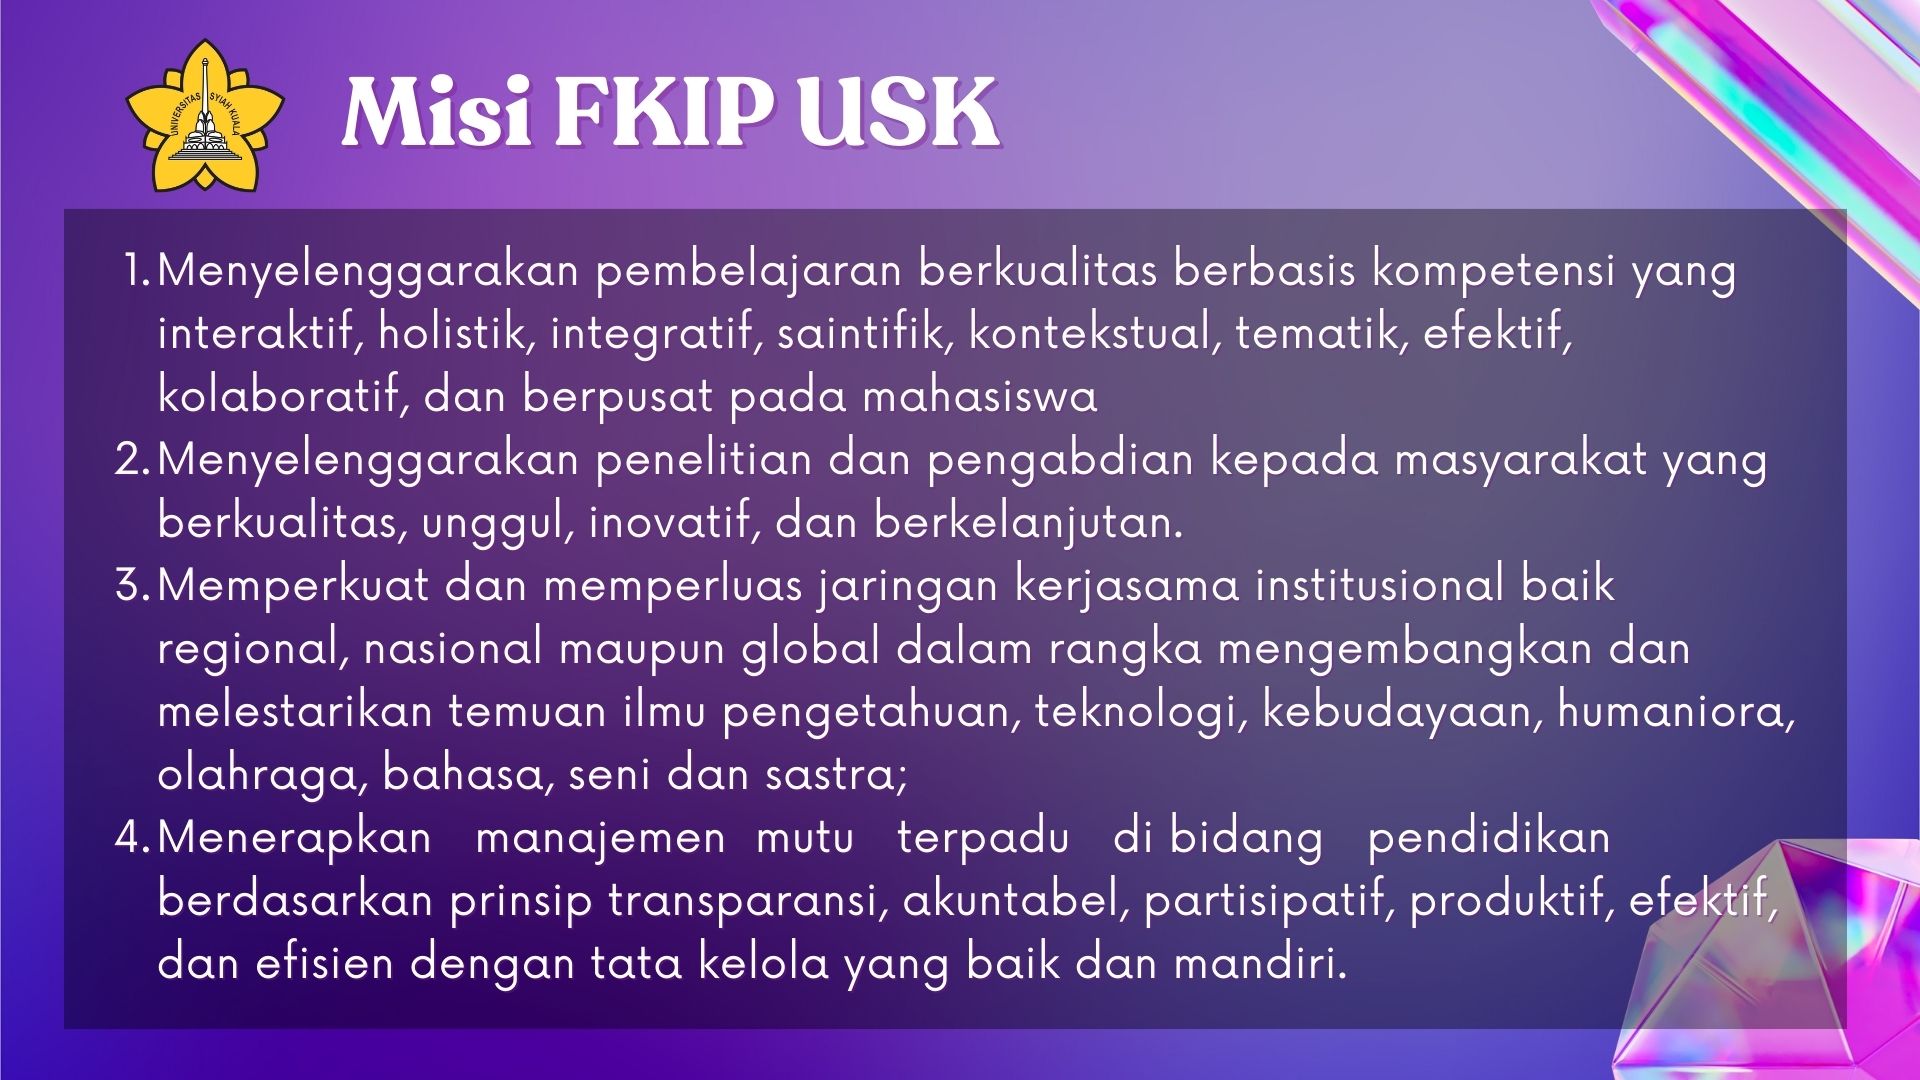 Misi-FKIP-USK